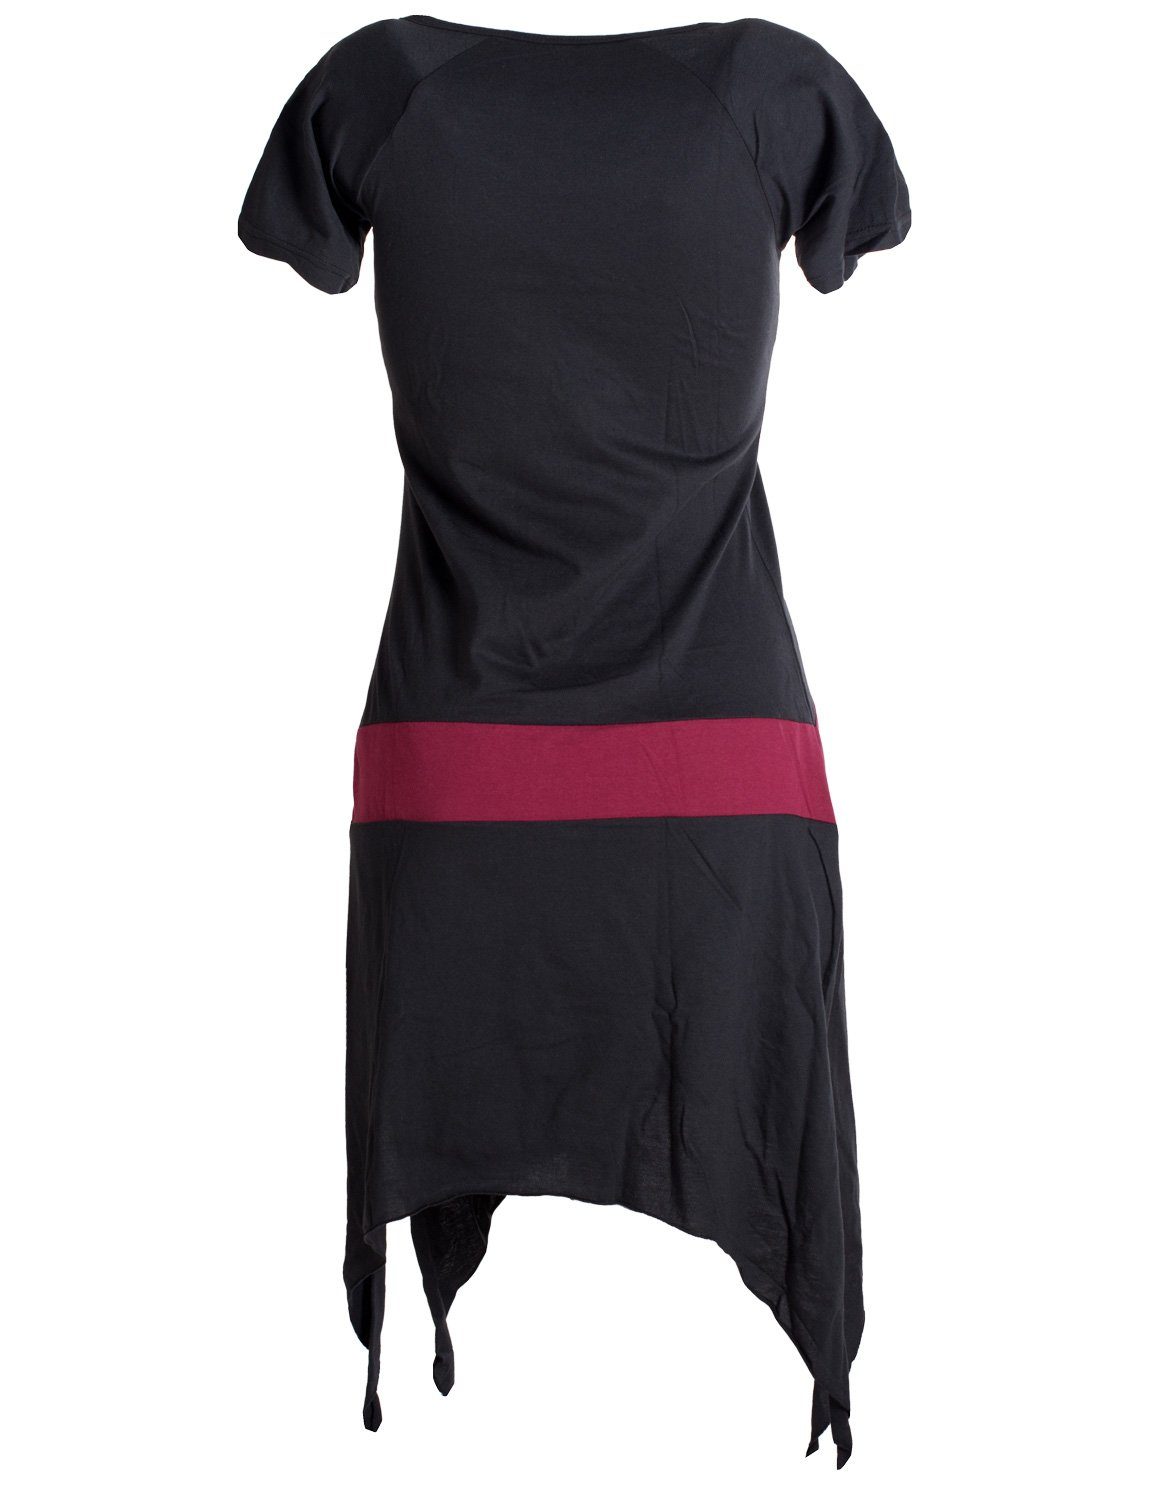 Hippie Longshirt, Vishes Zipfelkleid Sommerkleid Baumwolle kurzärmliges Style Tunika, schwarz-dunkelrot aus Einfaches